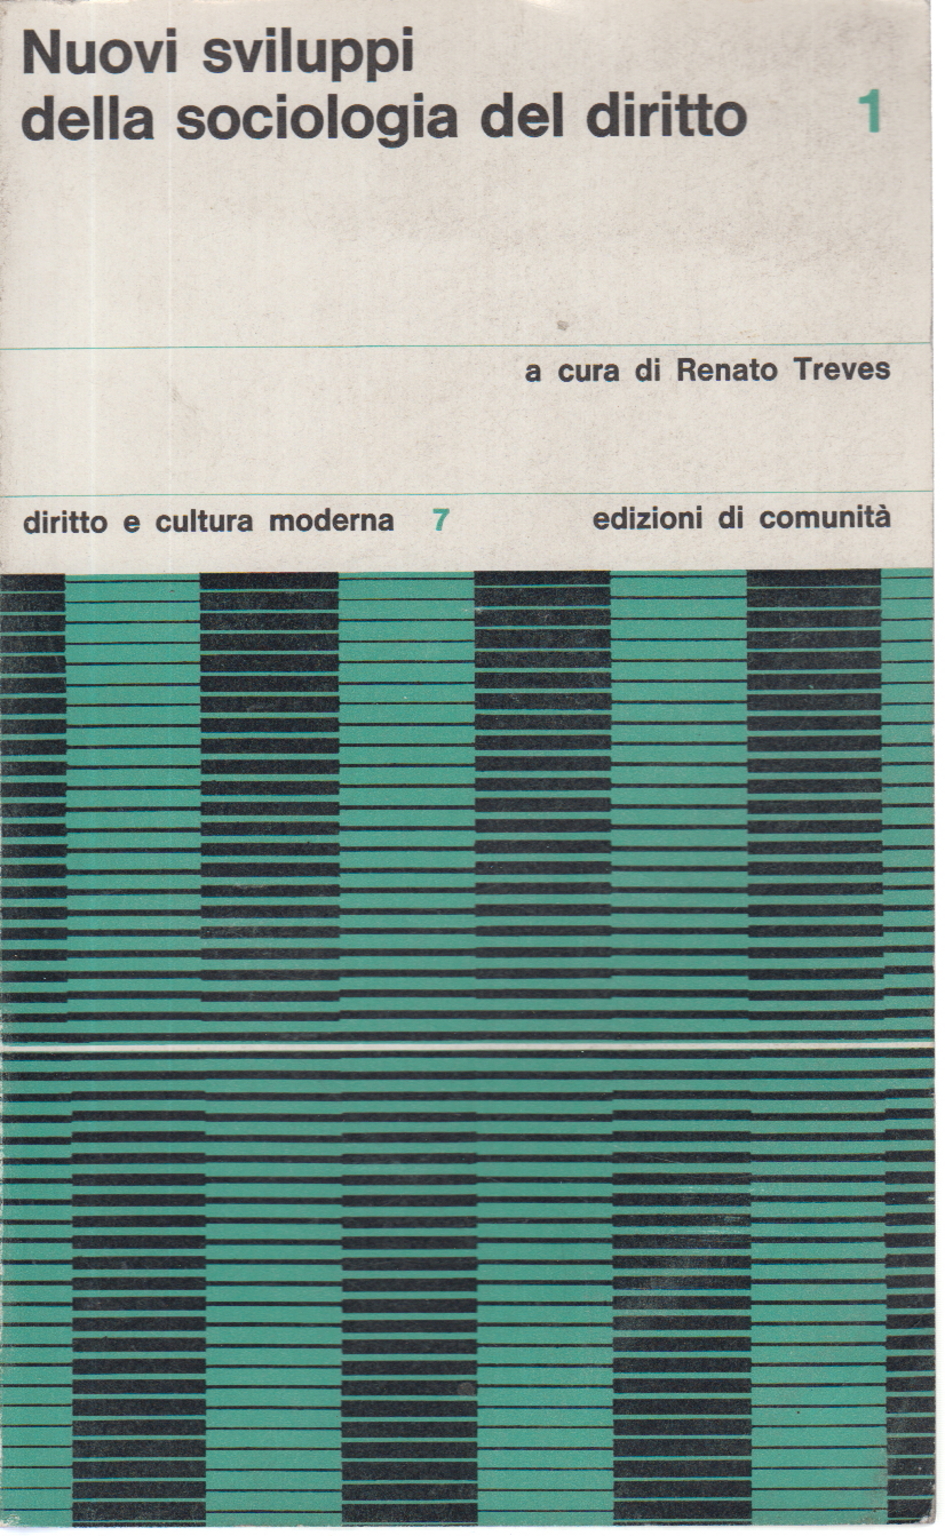 Nuovi sviluppi della sociologia nel diritto (1966-, Renato Treves